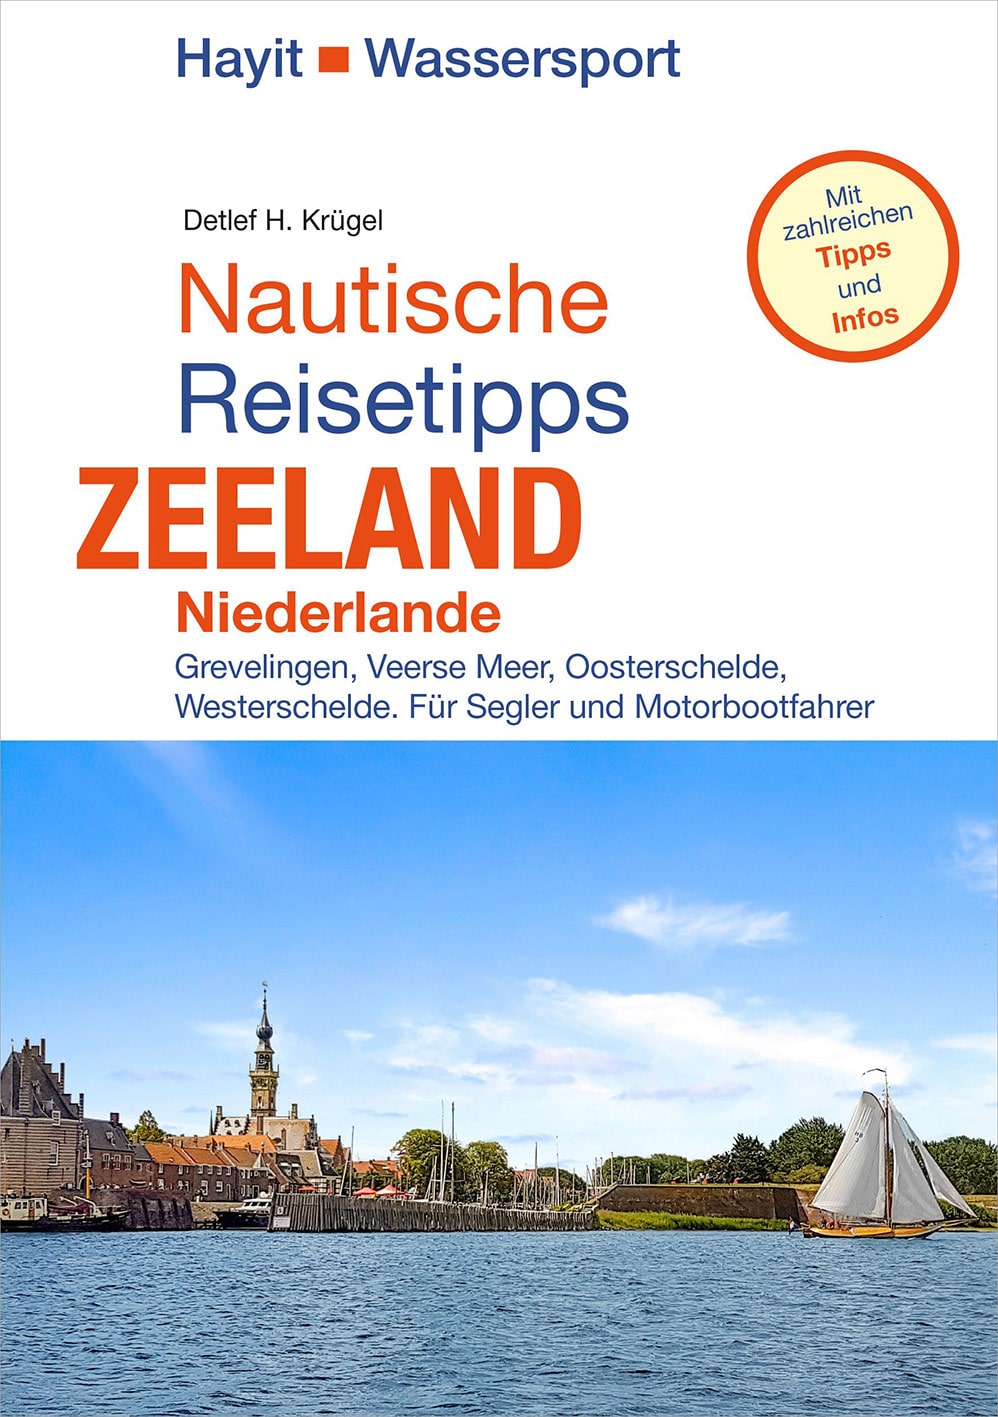 Ratgeber für Bootsurlauber in Zeeland